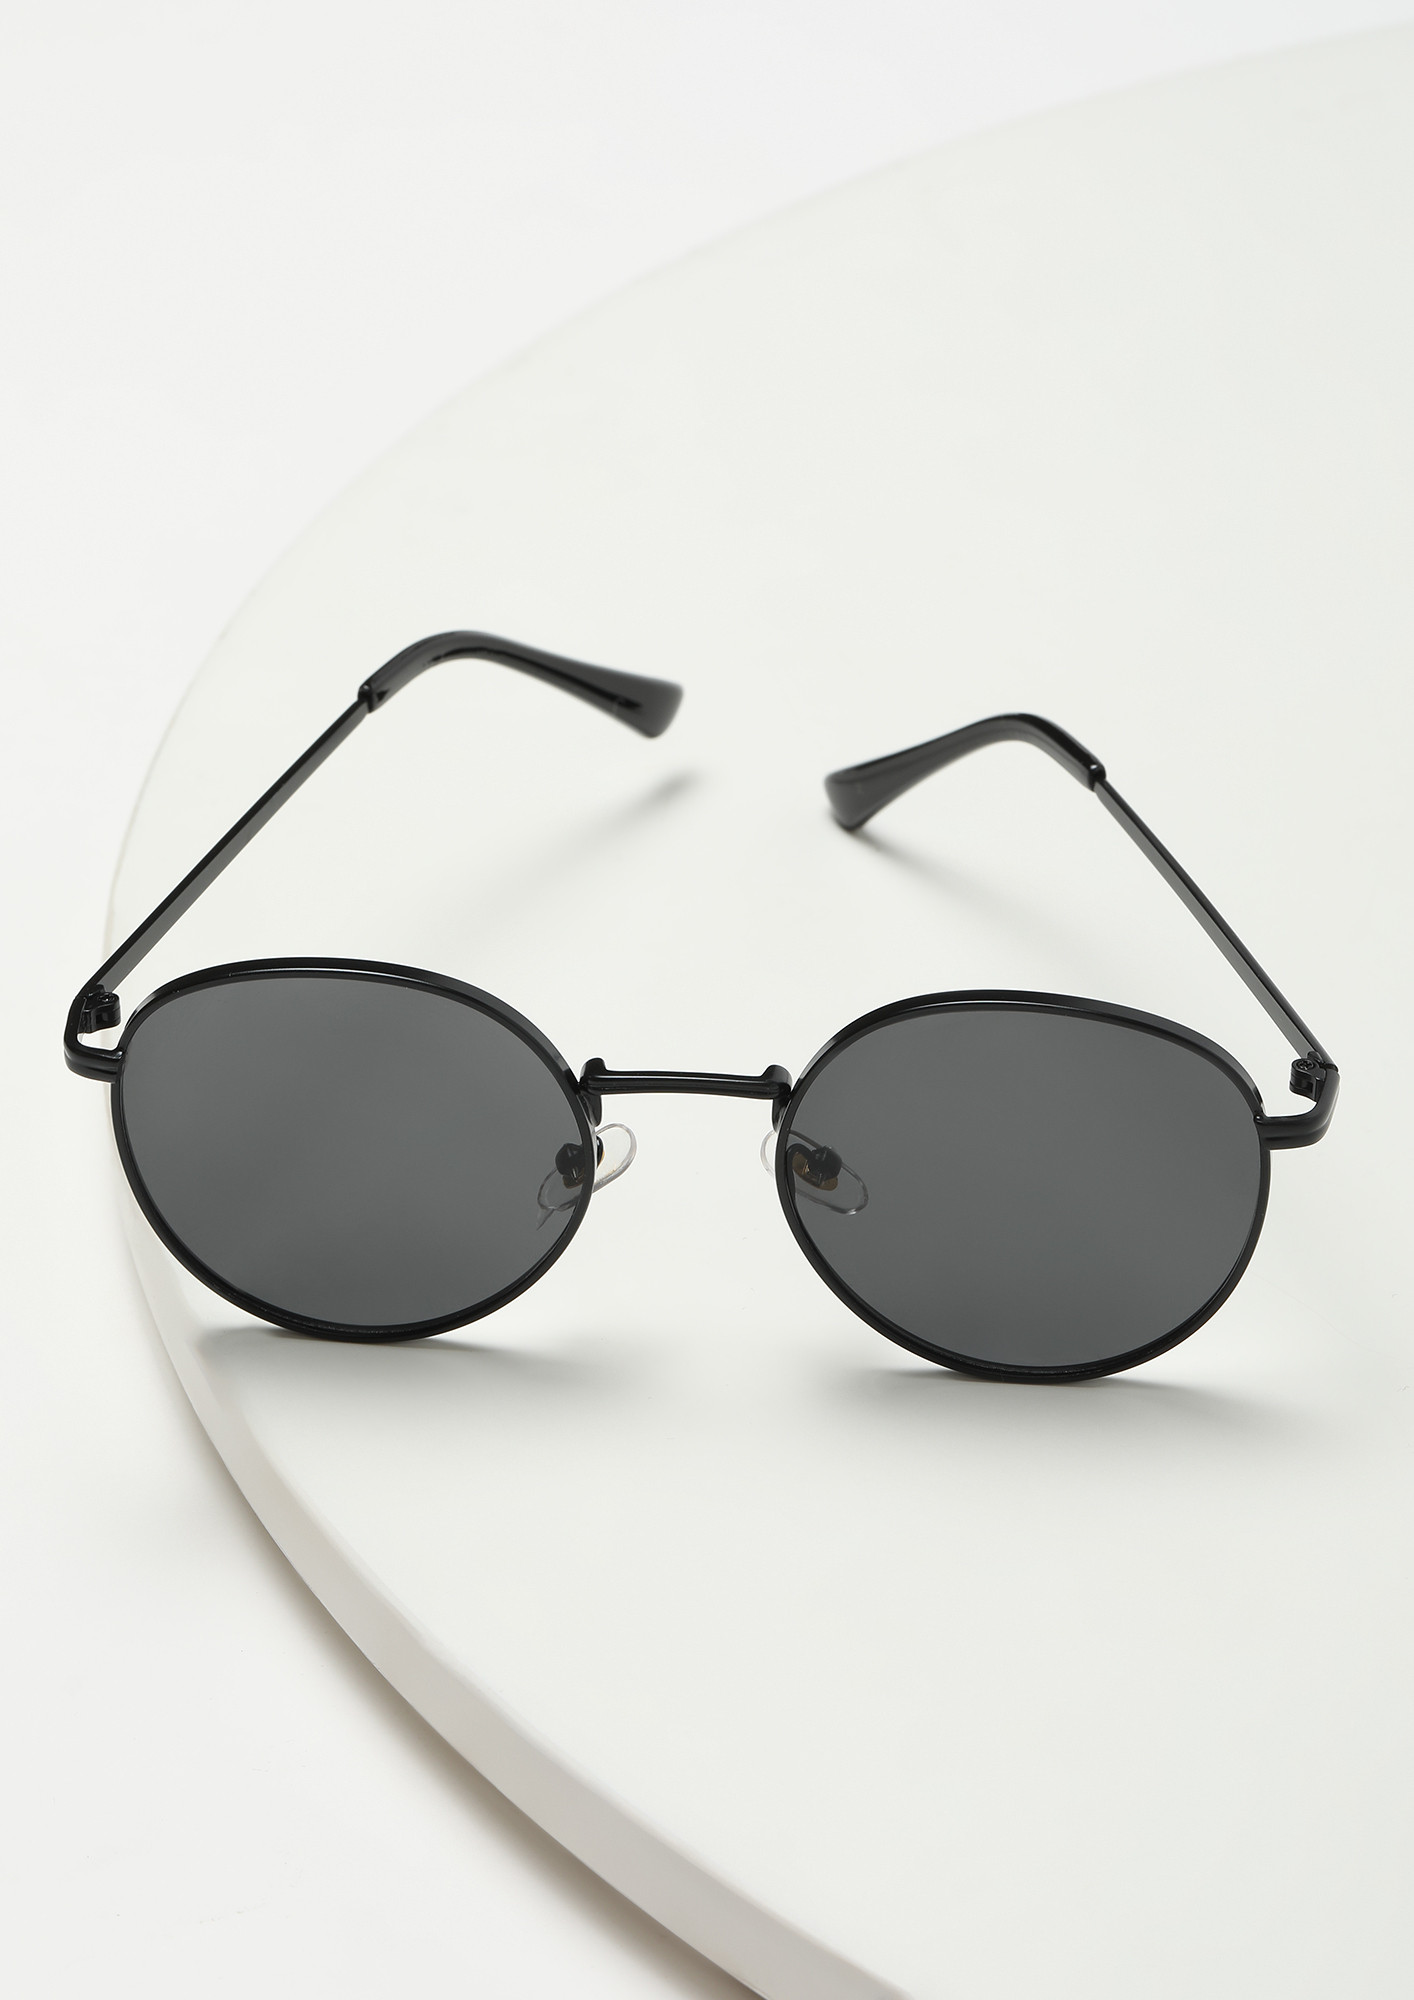 Buy RMKK Round Sunglasses Black, Yellow For Men & Women Online @ Best  Prices in India | Flipkart.com